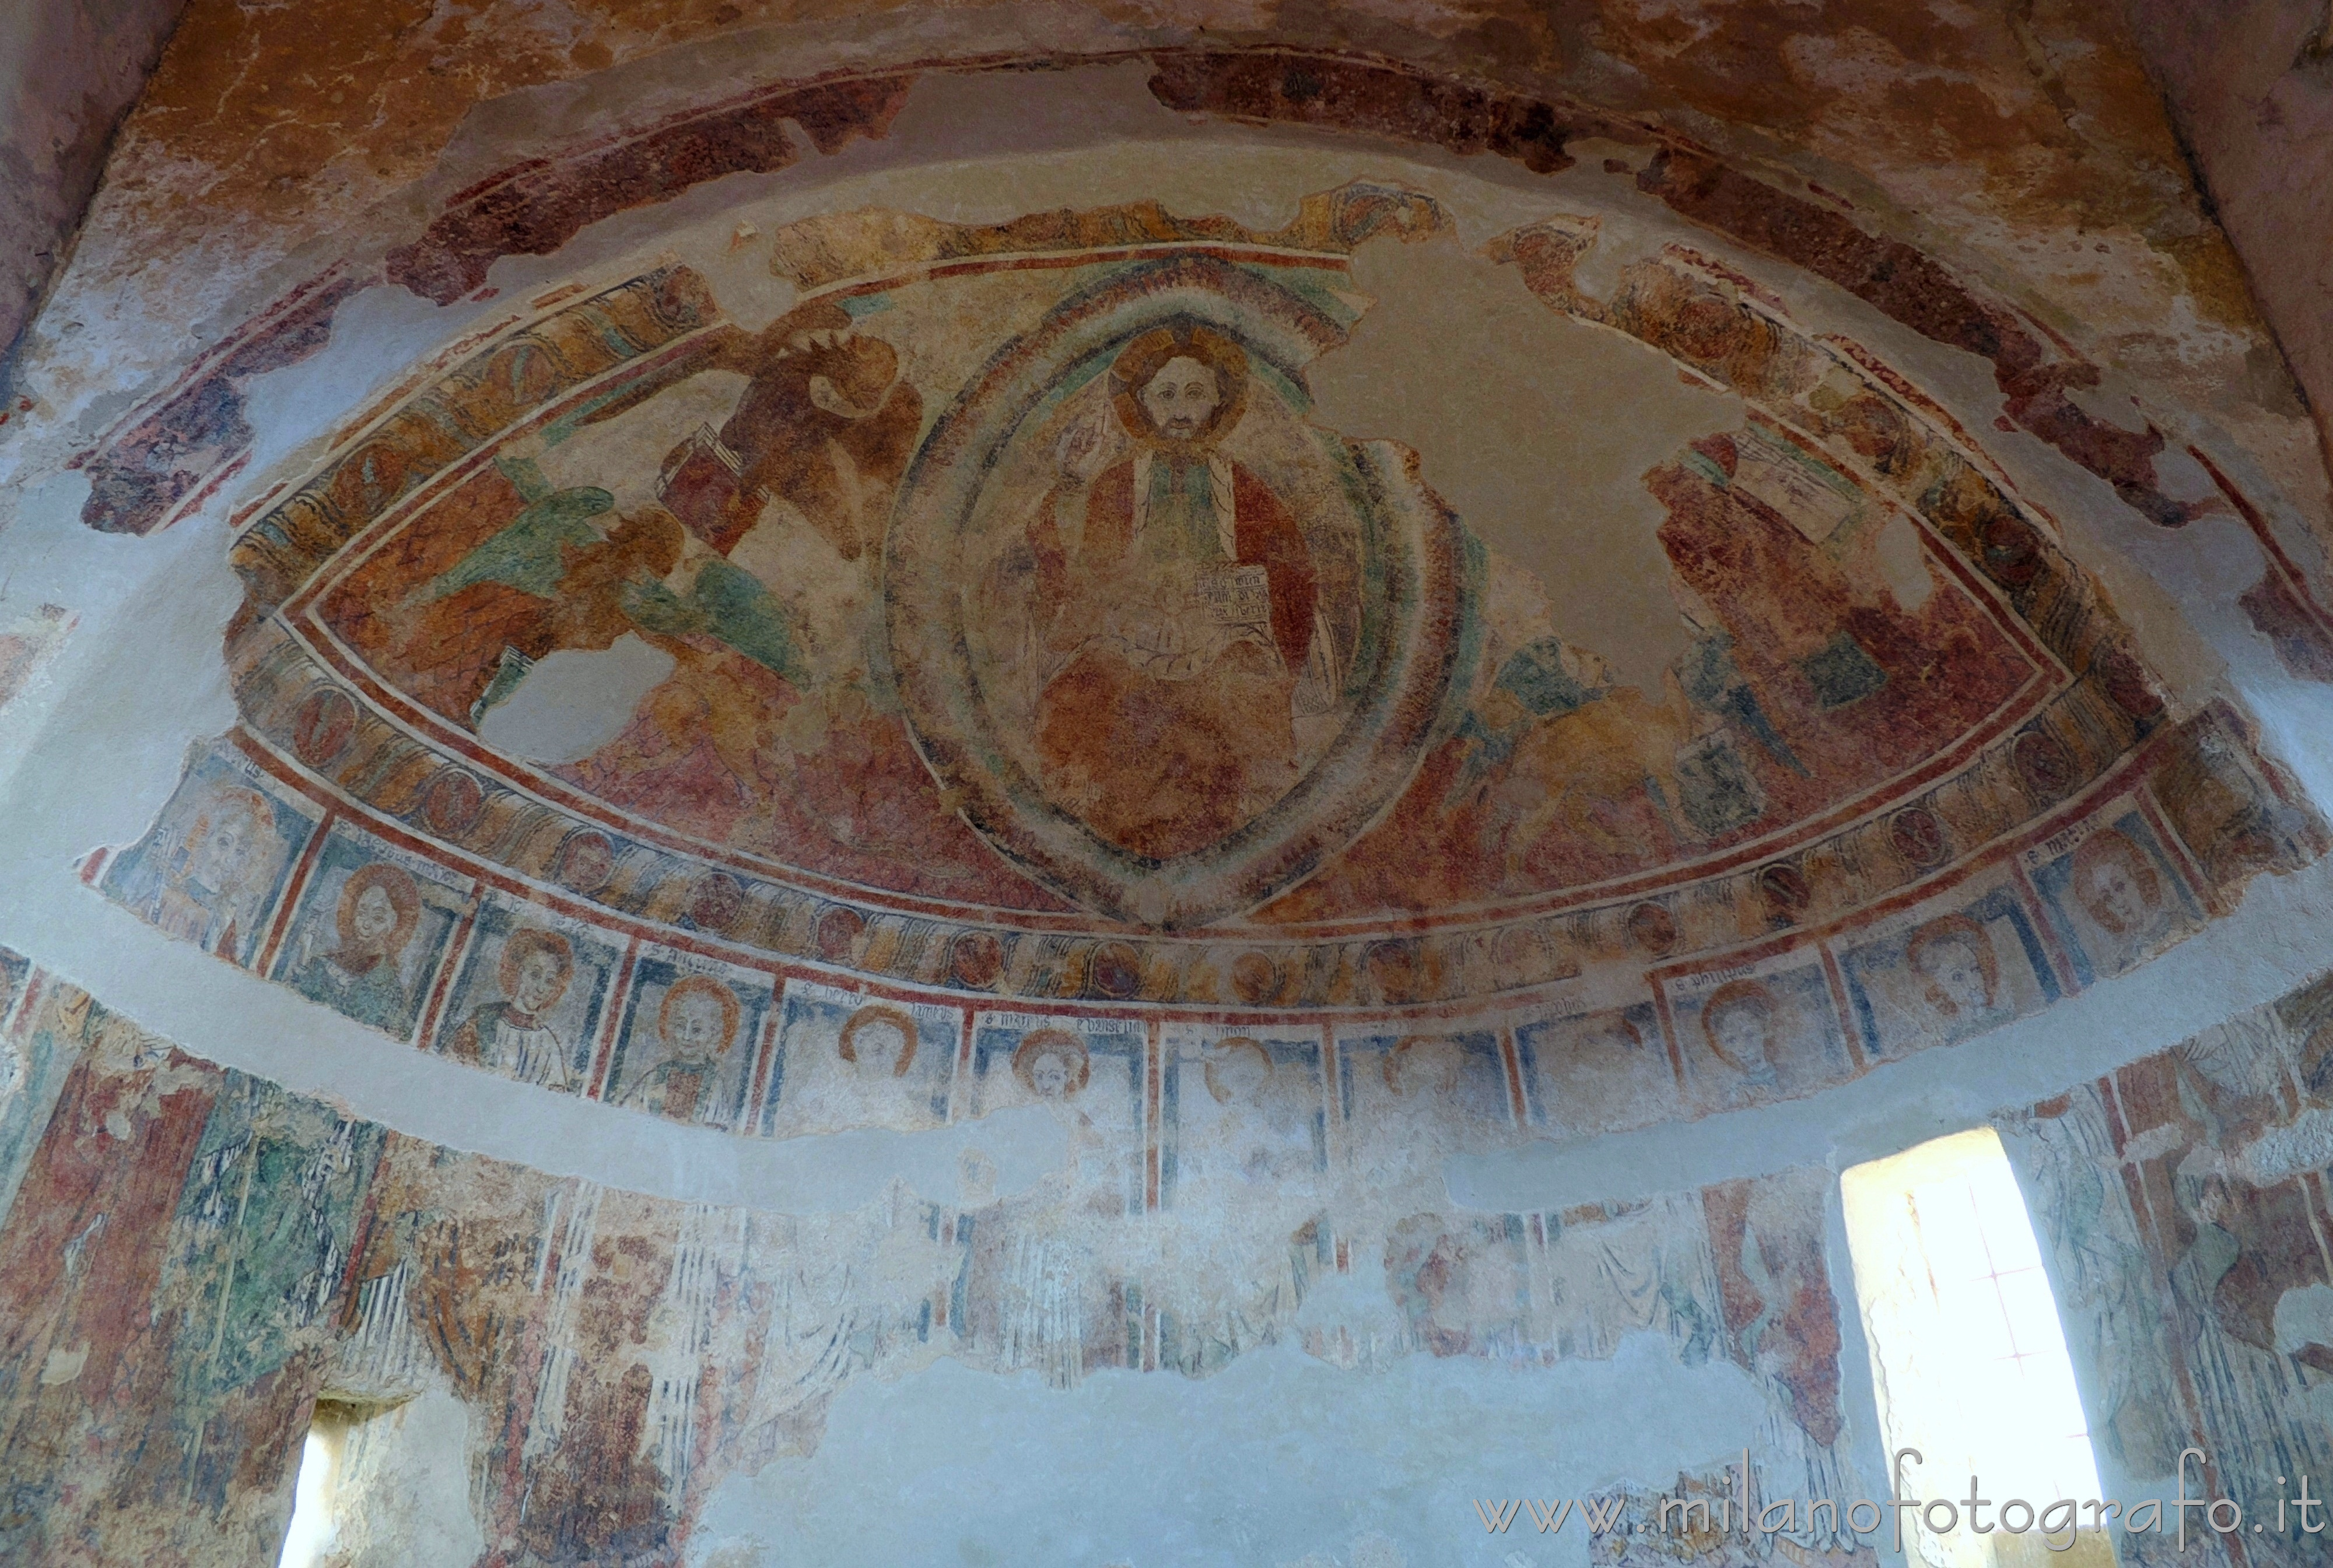 Netro (Biella): Affreschi nell'abside centrale della Chiesa cimiteriale di Santa Maria Assunta - Netro (Biella)